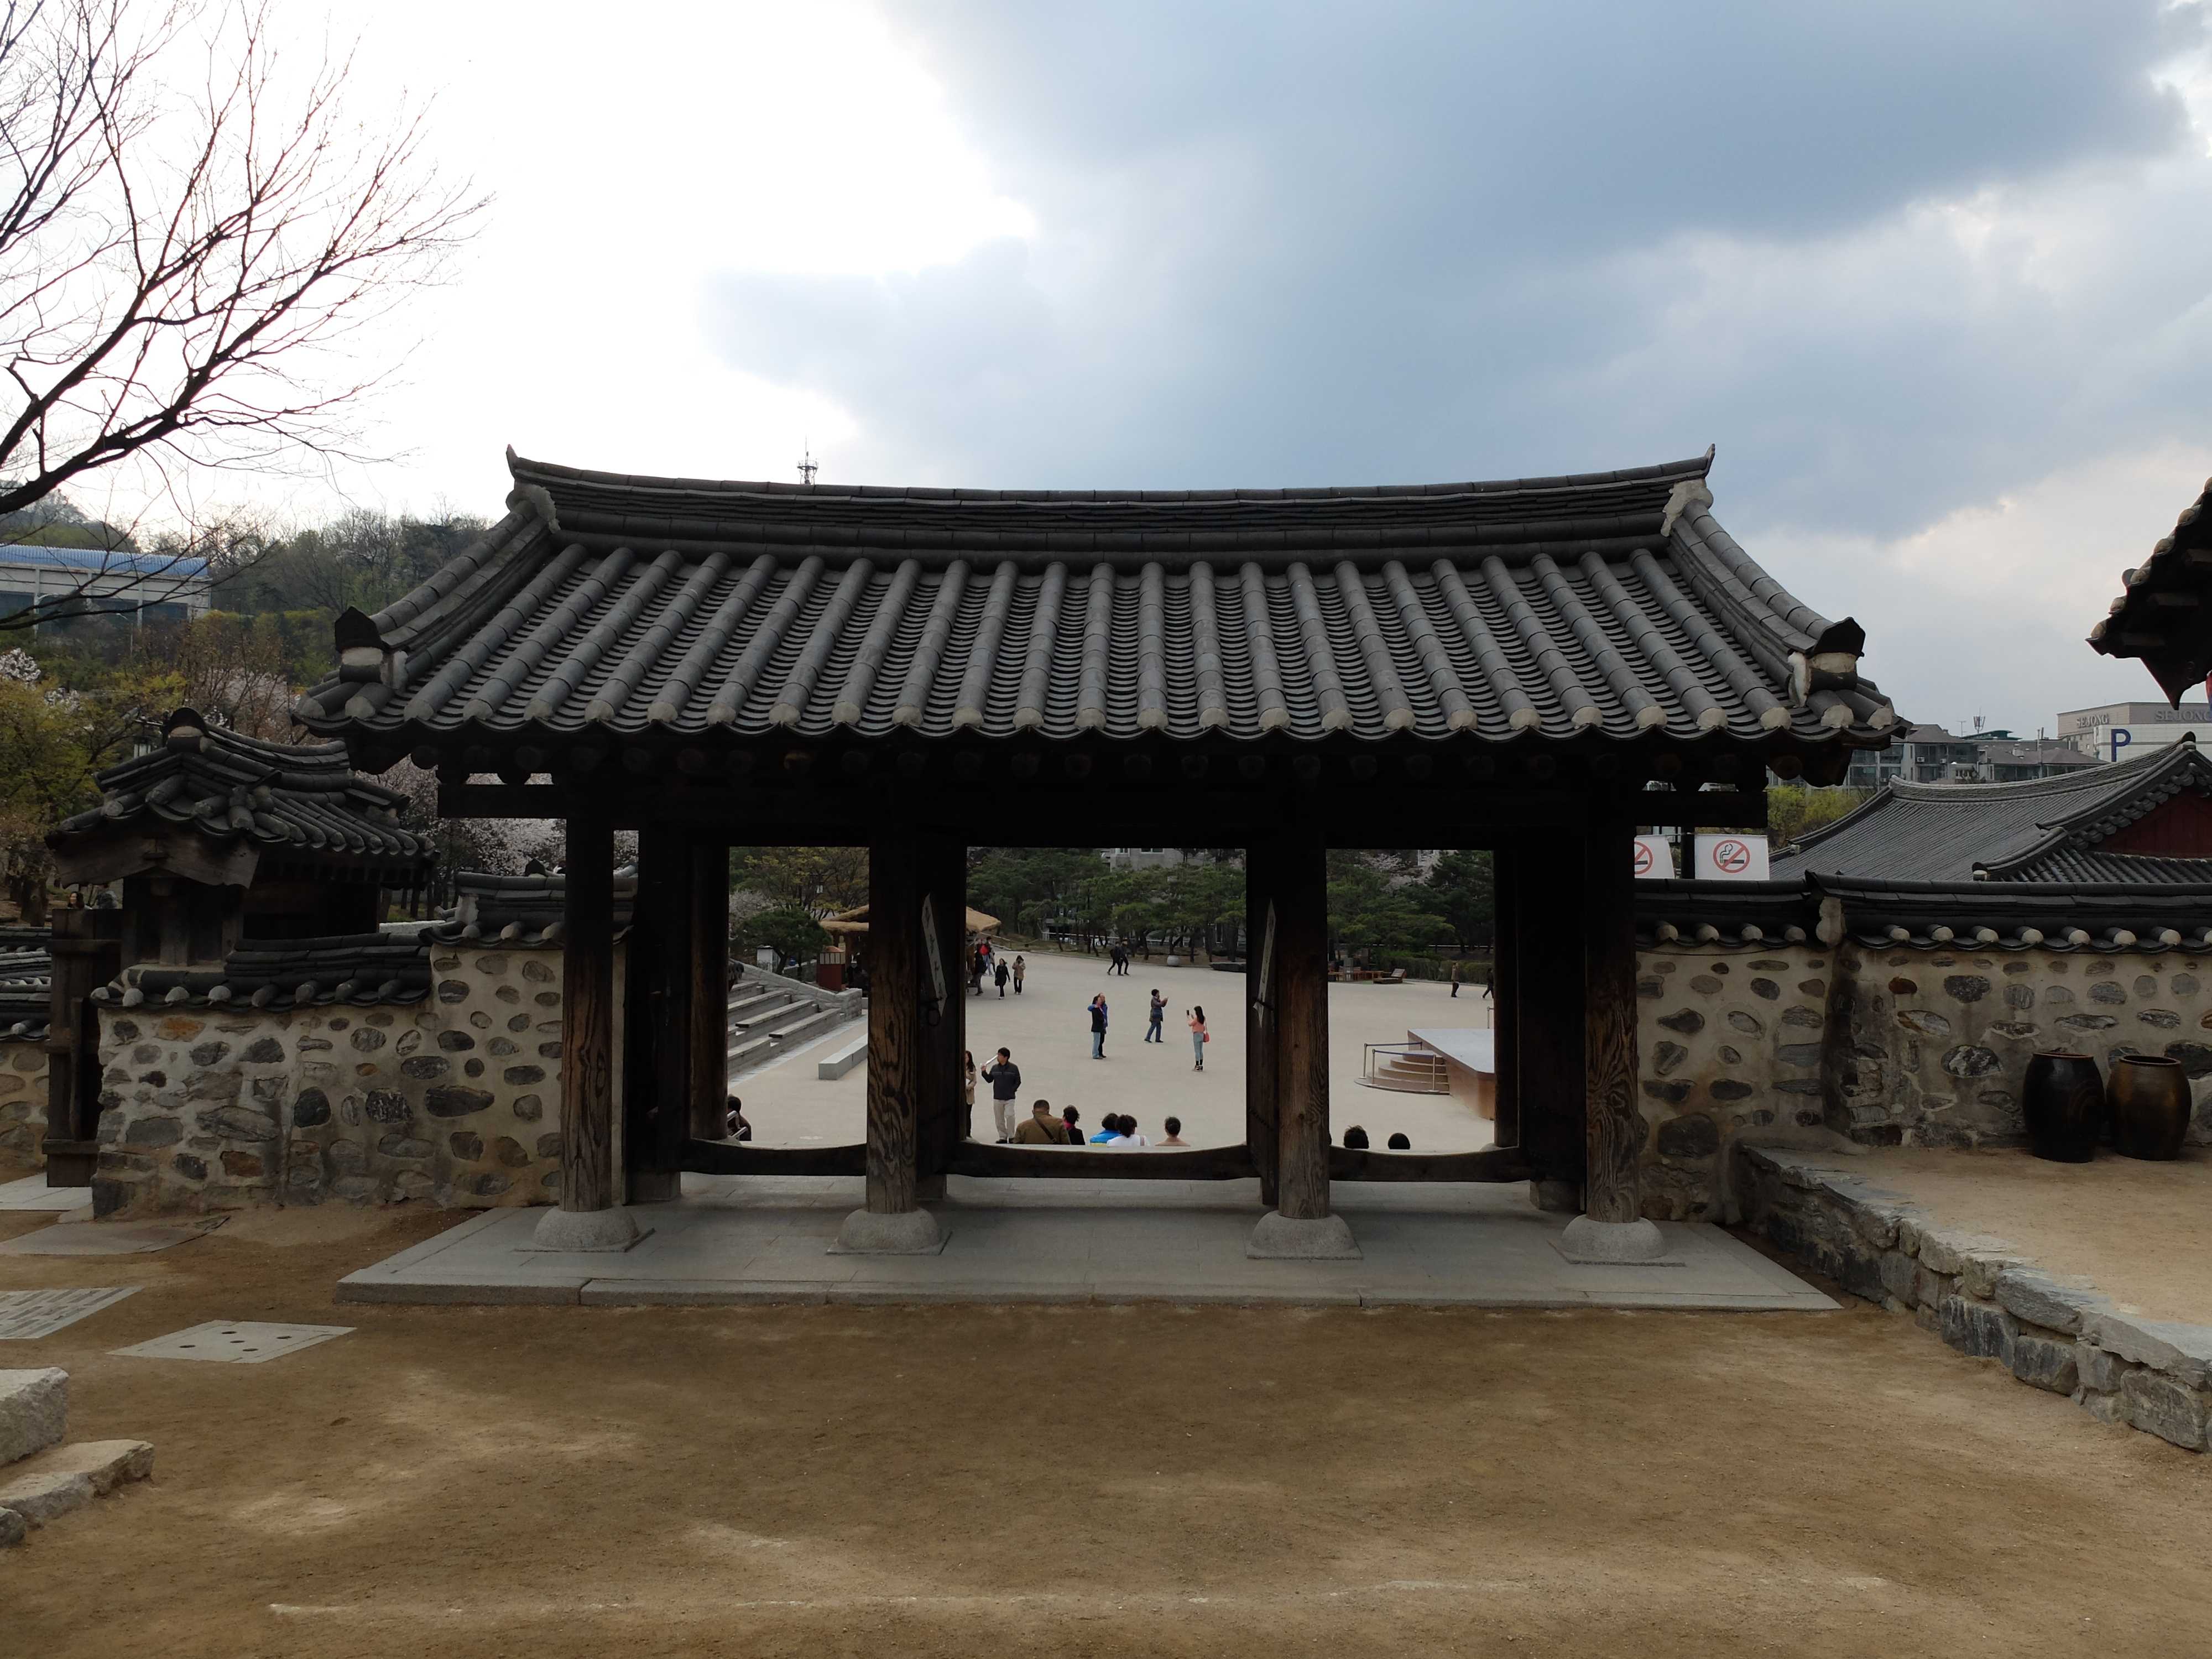 Menengok Rumah  Tradisional  Korea  di Namsangol Hanok 